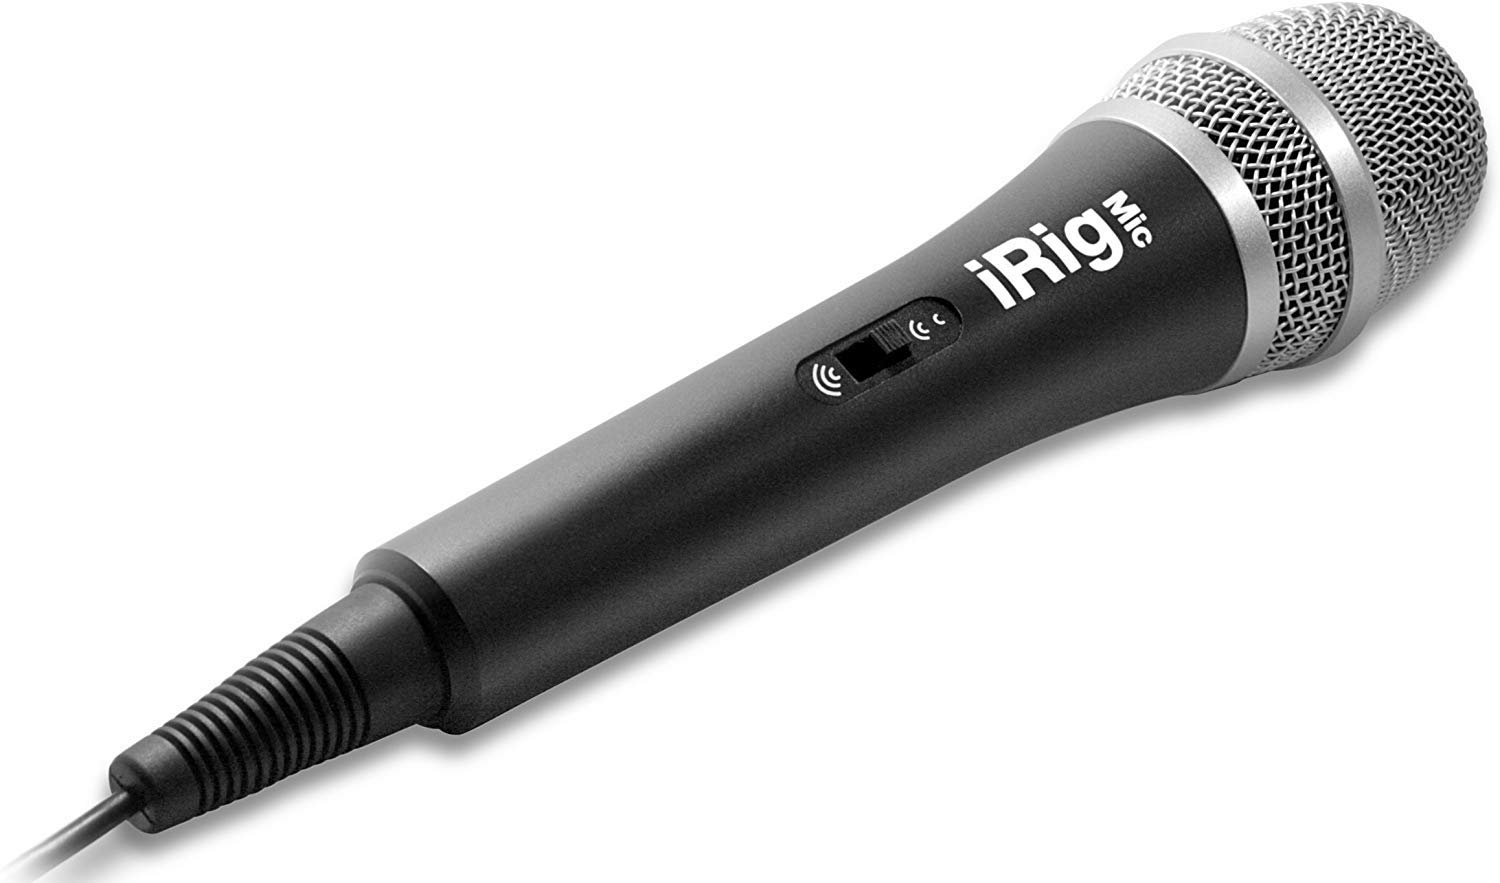 iRig Mic Handgehaltenes Mikrofon für Audio- und Vokal Aufnahme Kompatibel mit iPhone, iPod Touch und iPad - Schwarz/Silber